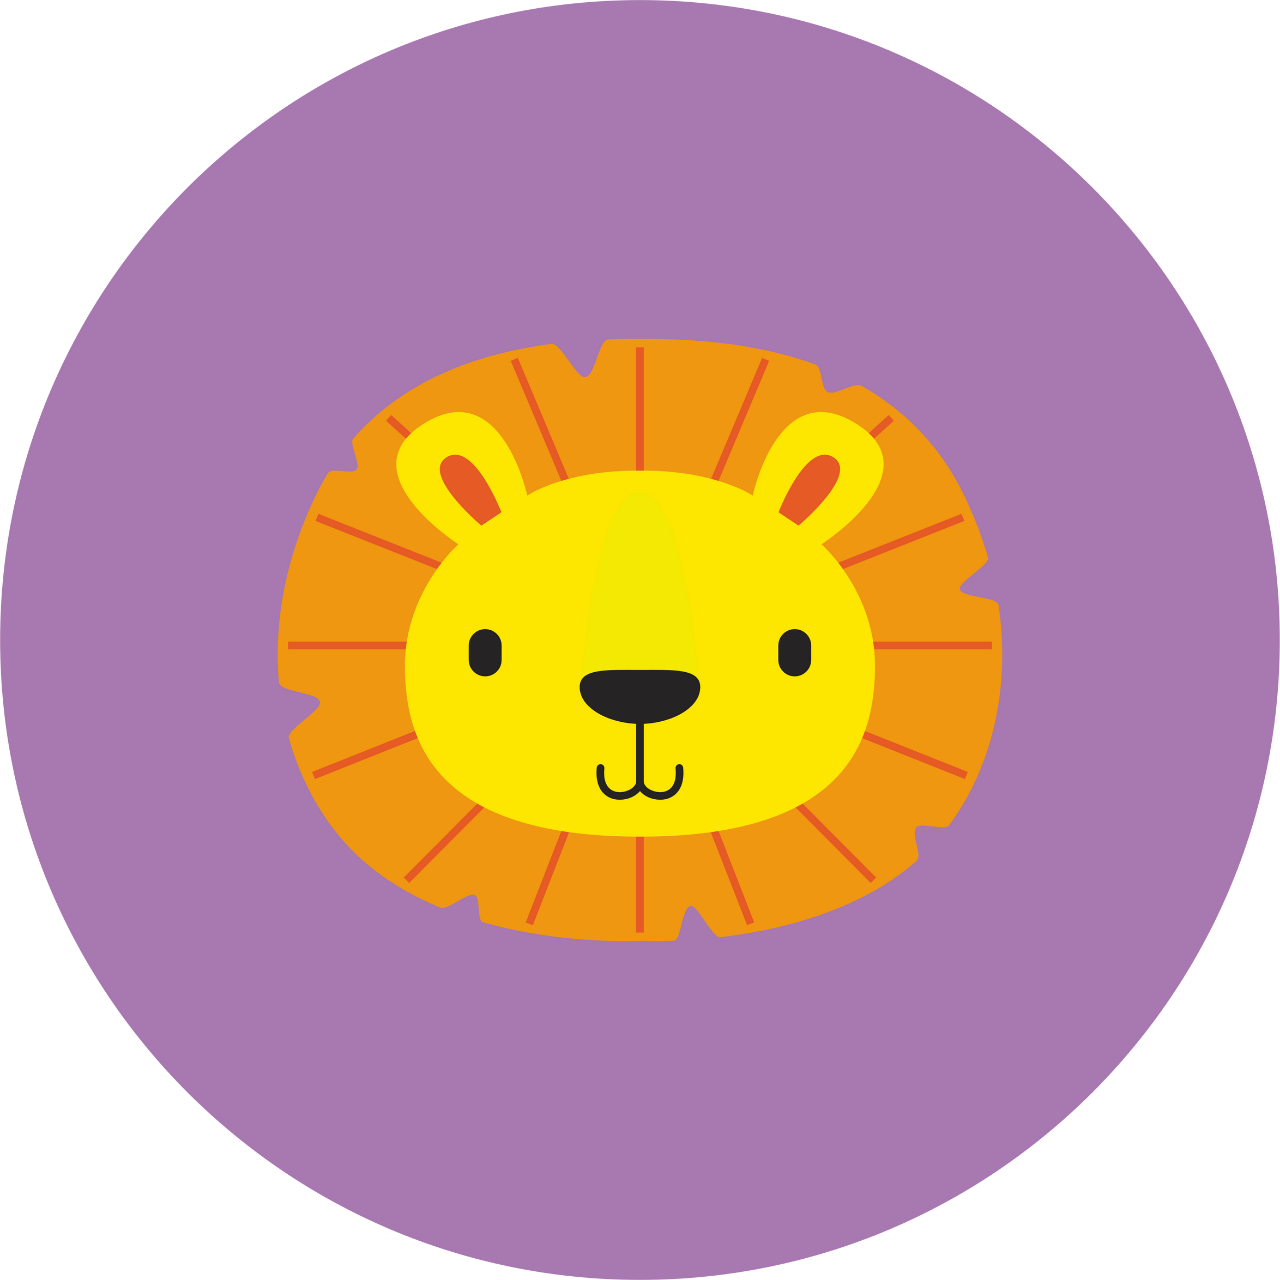 Mor bir daire içinde turuncu yelesi ve sarı renk bir kulakları olan siyah renk gözü ve burunlu bir aslan başı